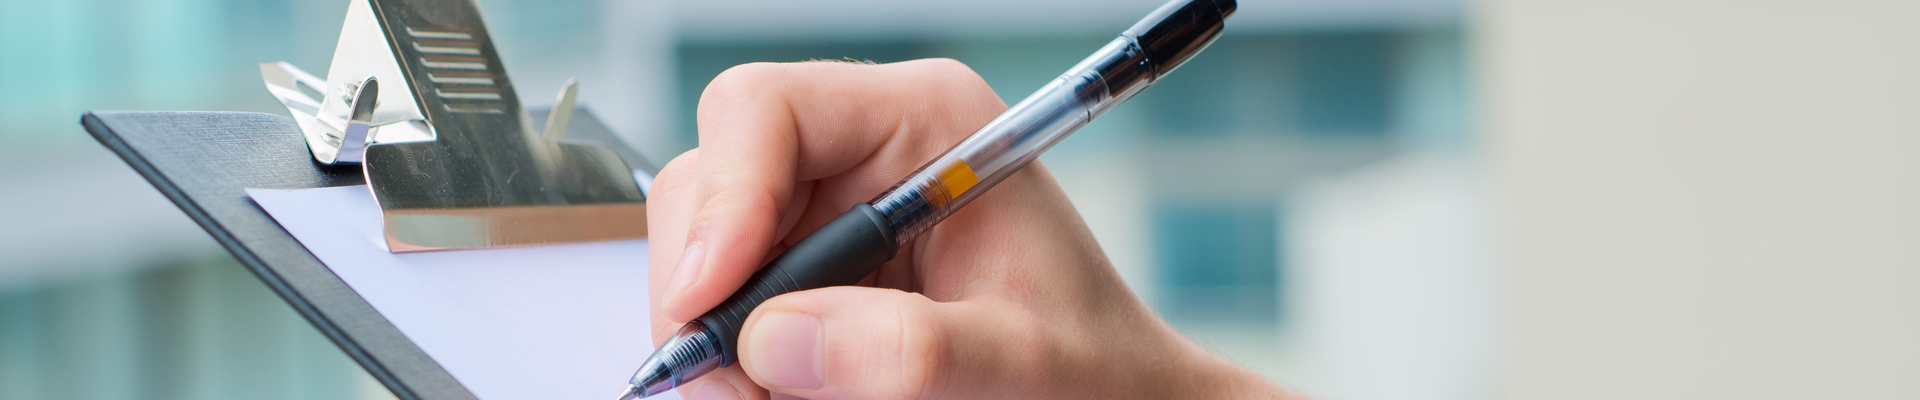 Detailaufnahme einer Person, die einen Stift in der Hand hält und damit auf ein Klemmbrett schreibt.